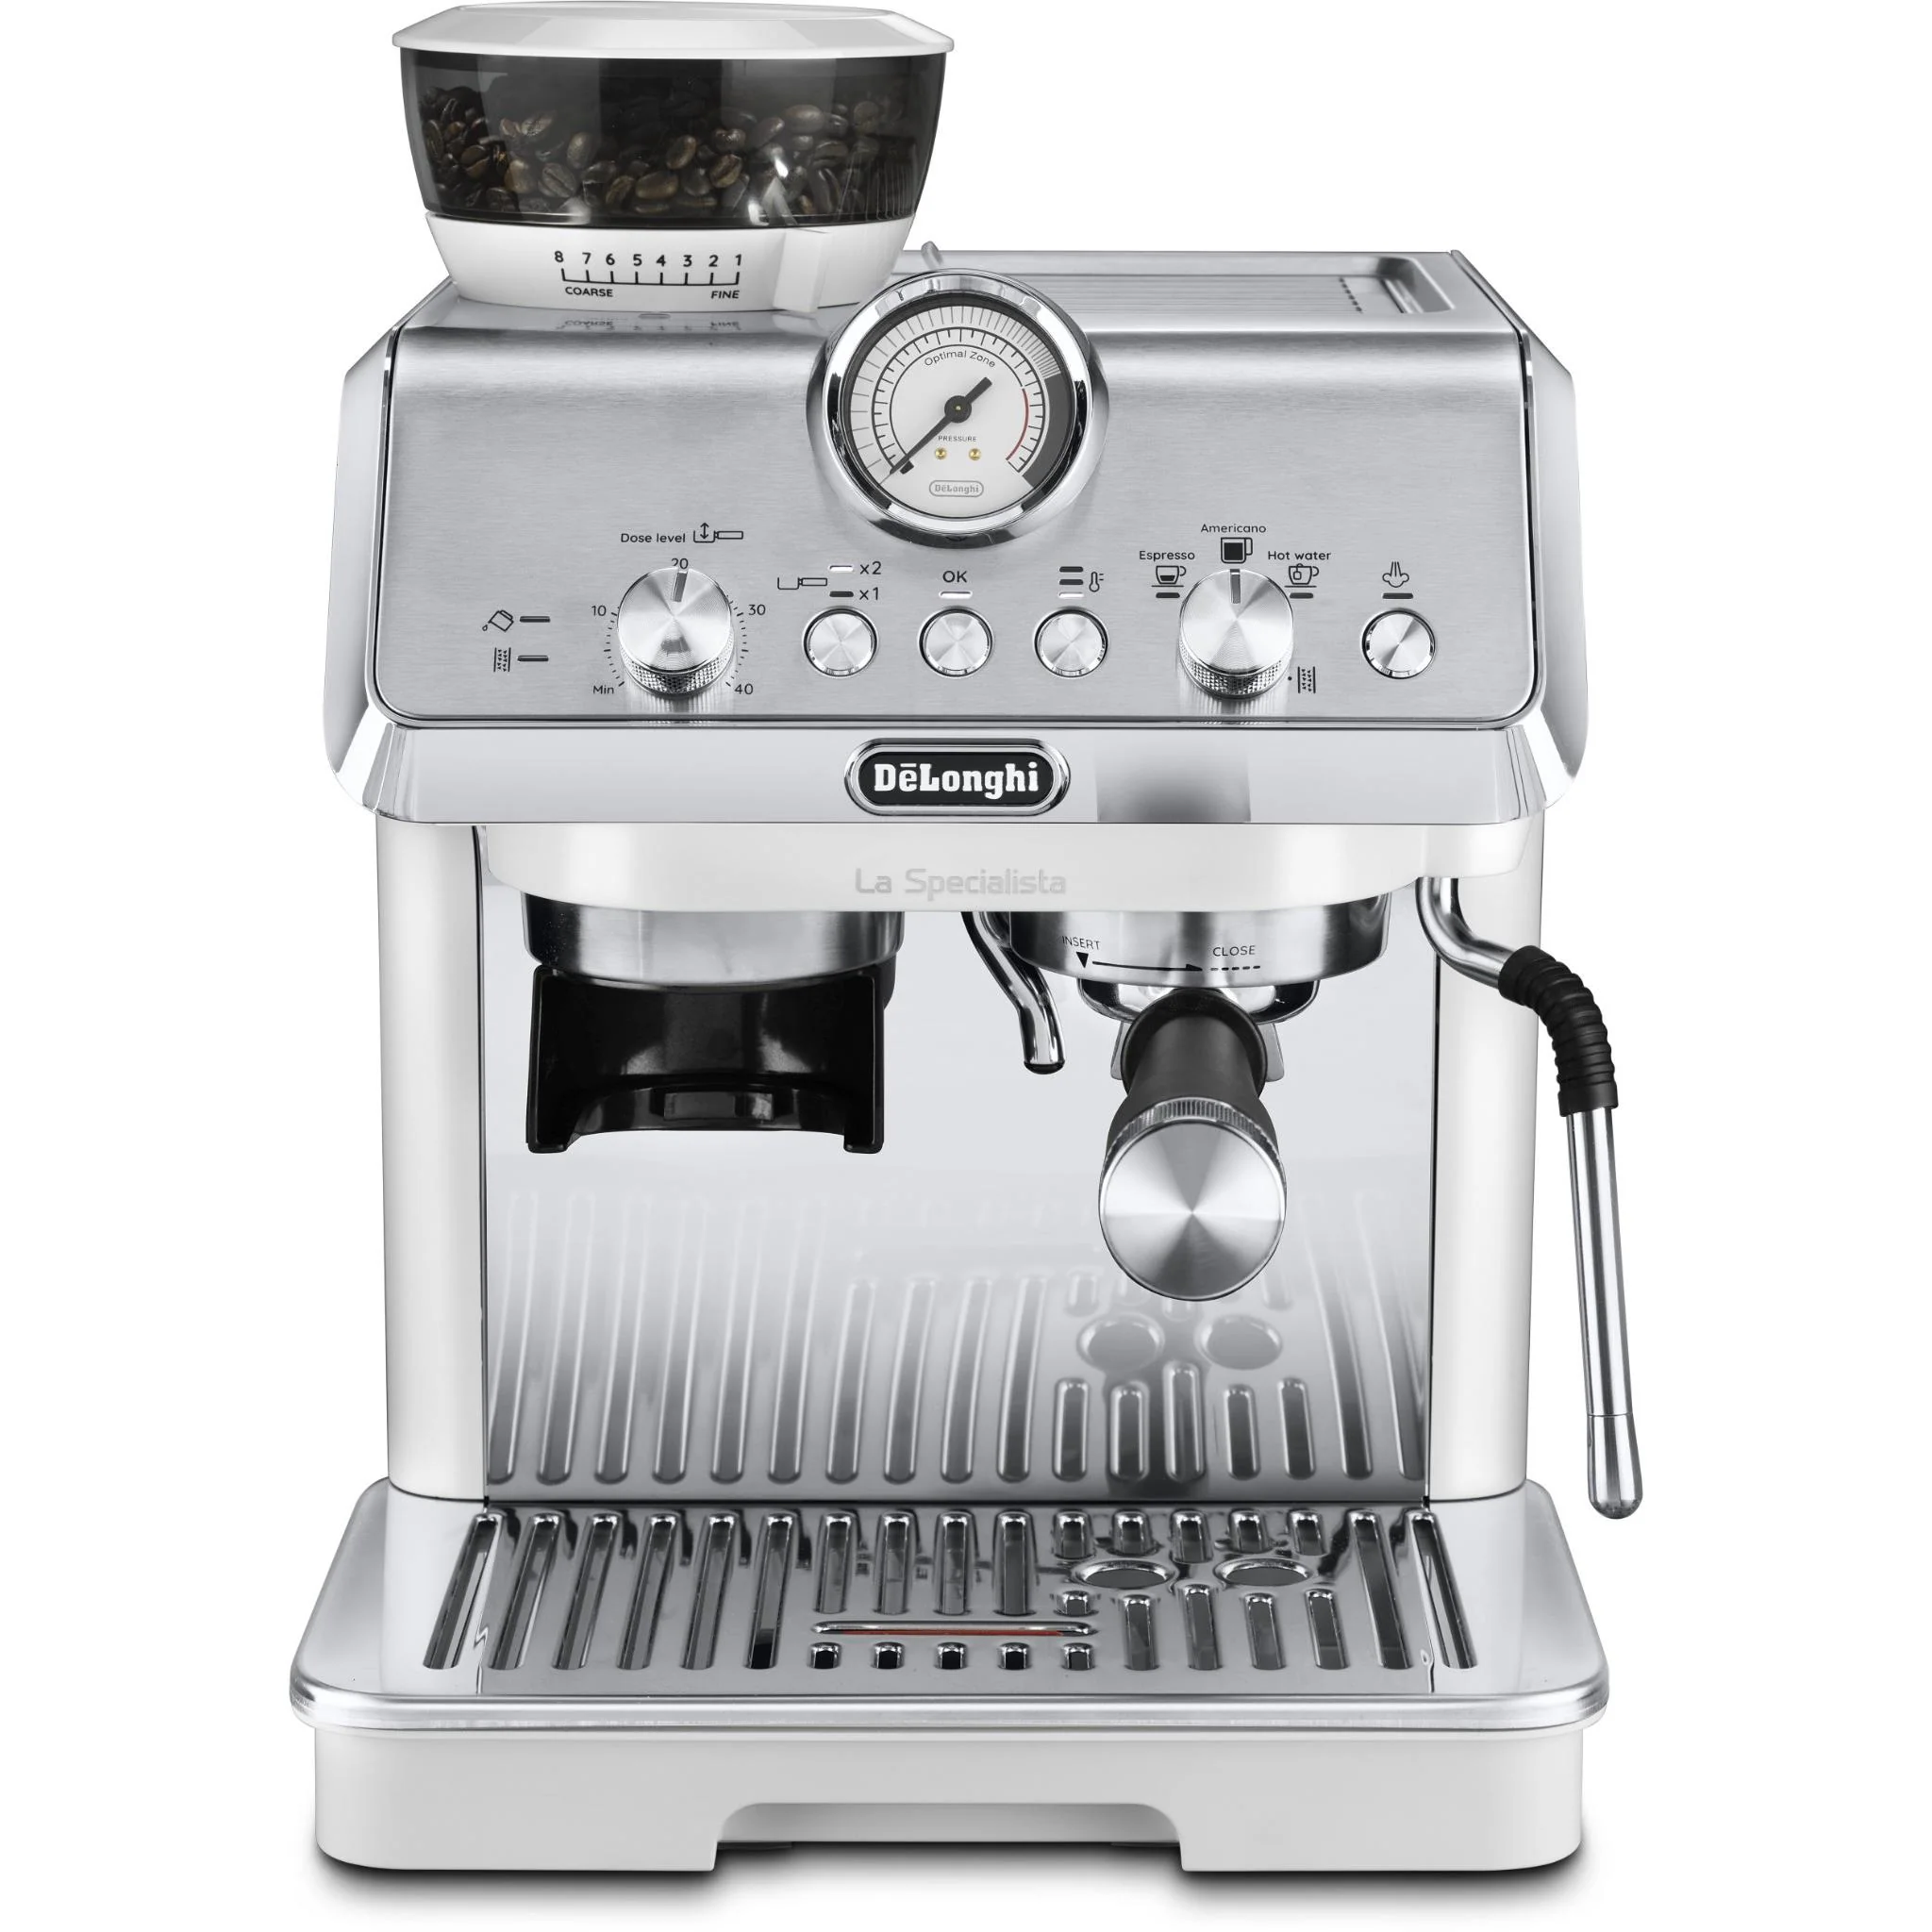 DeLonghi La Specialista Arte Manual Pump Coffee Machine (White)